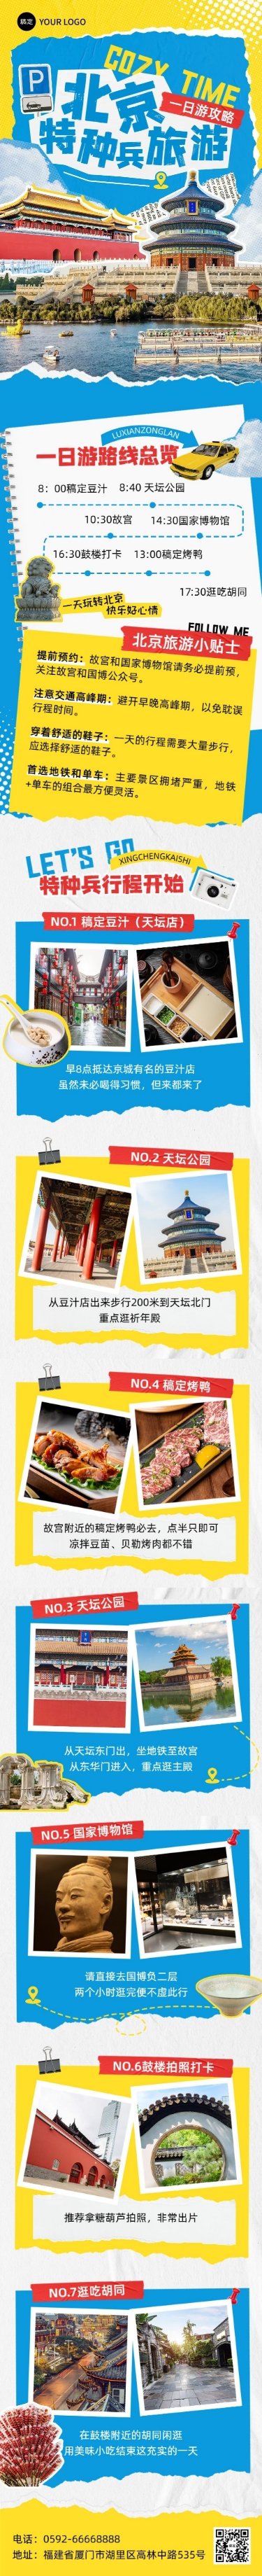 旅游出行北京旅游攻略撕纸拼贴风文章长图